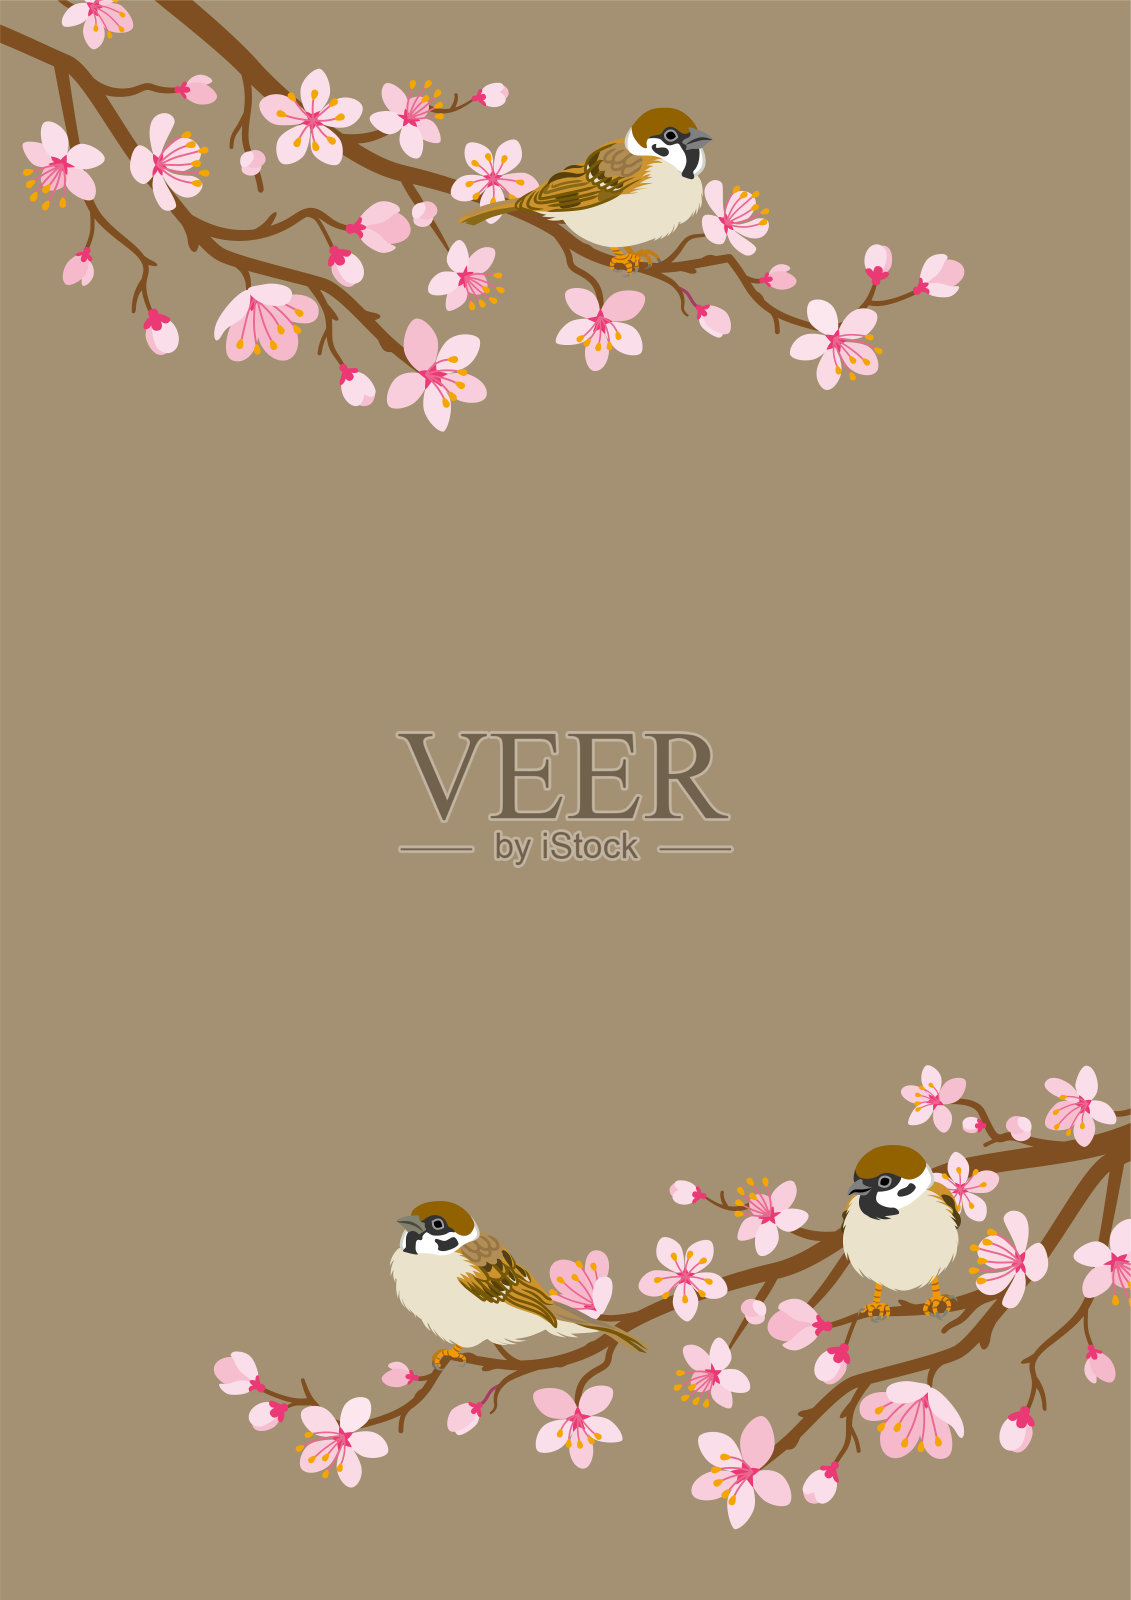 小鸟栖息在樱花枝上-家麻雀，垂直布局设计元素图片